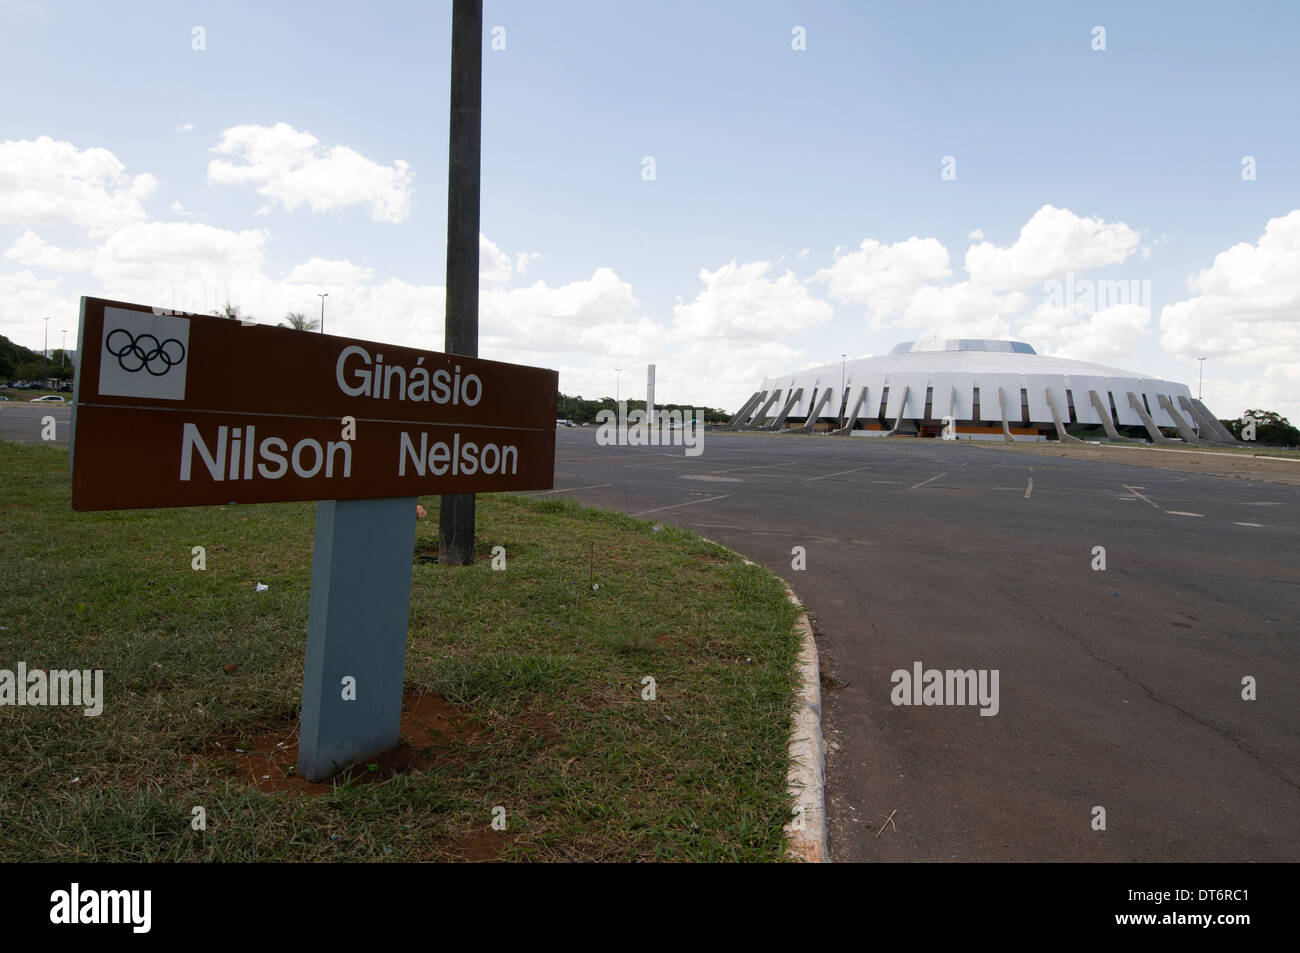 Le Ginasio Nilson Nelson Gymnasium est un stade à Brasilia, Brésil Banque D'Images